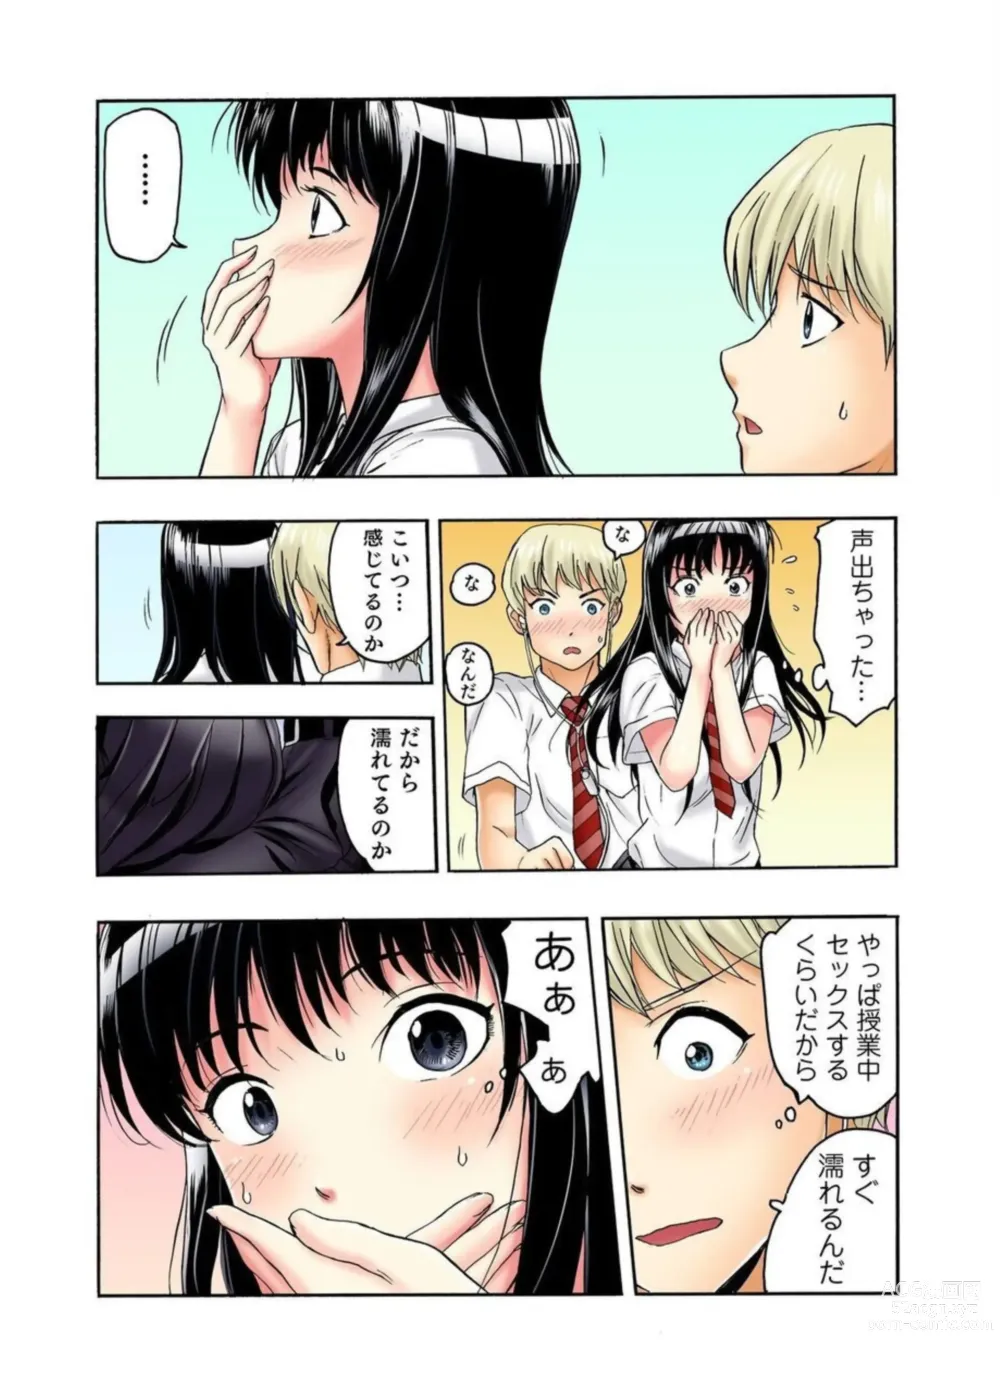 Page 16 of manga Tenkousei no Seki ga Ore no Hiza no Ue ni Kimatta no de Hame Temita Dai 2-bu 1-2